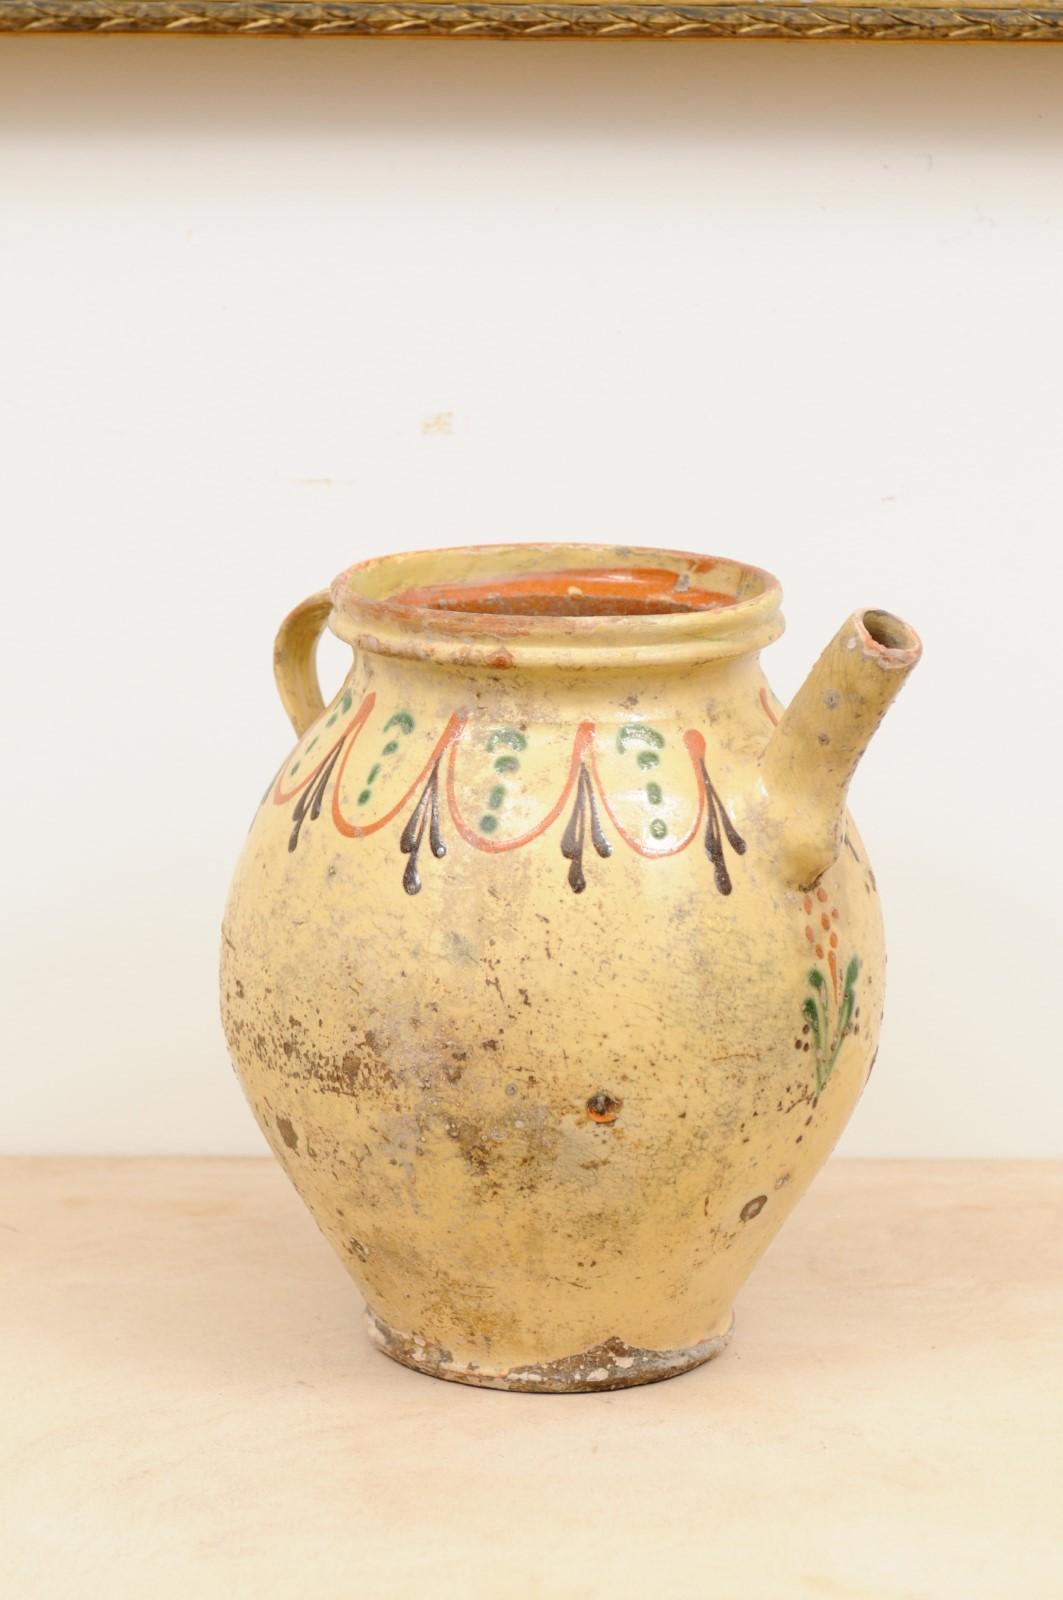 Pot à huile d'olive en poterie vernissée française du 19e siècle, avec des motifs bruns, orange et verts. Créé en France au XIXe siècle, ce pot à huile d'olive rustique présente un aspect joliment patiné, délicatement rehaussé d'une frise de motifs